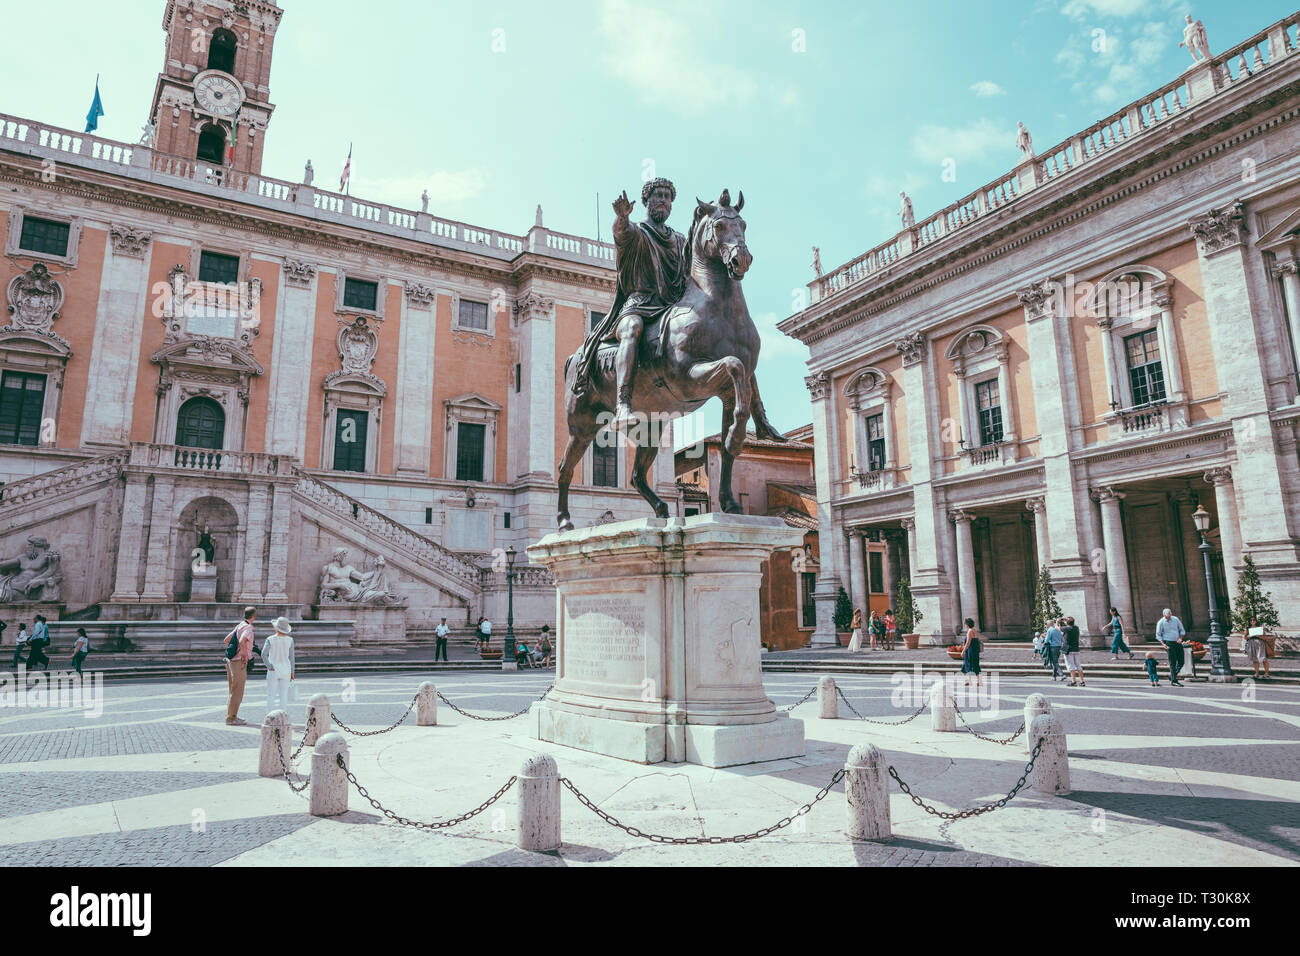 Roma, Italia - 23 Giugno 2018: vista panoramica del Capitolium o il Campidoglio è uno dei sette colli di Roma e la statua equestre di Marco Aurelio è Foto Stock